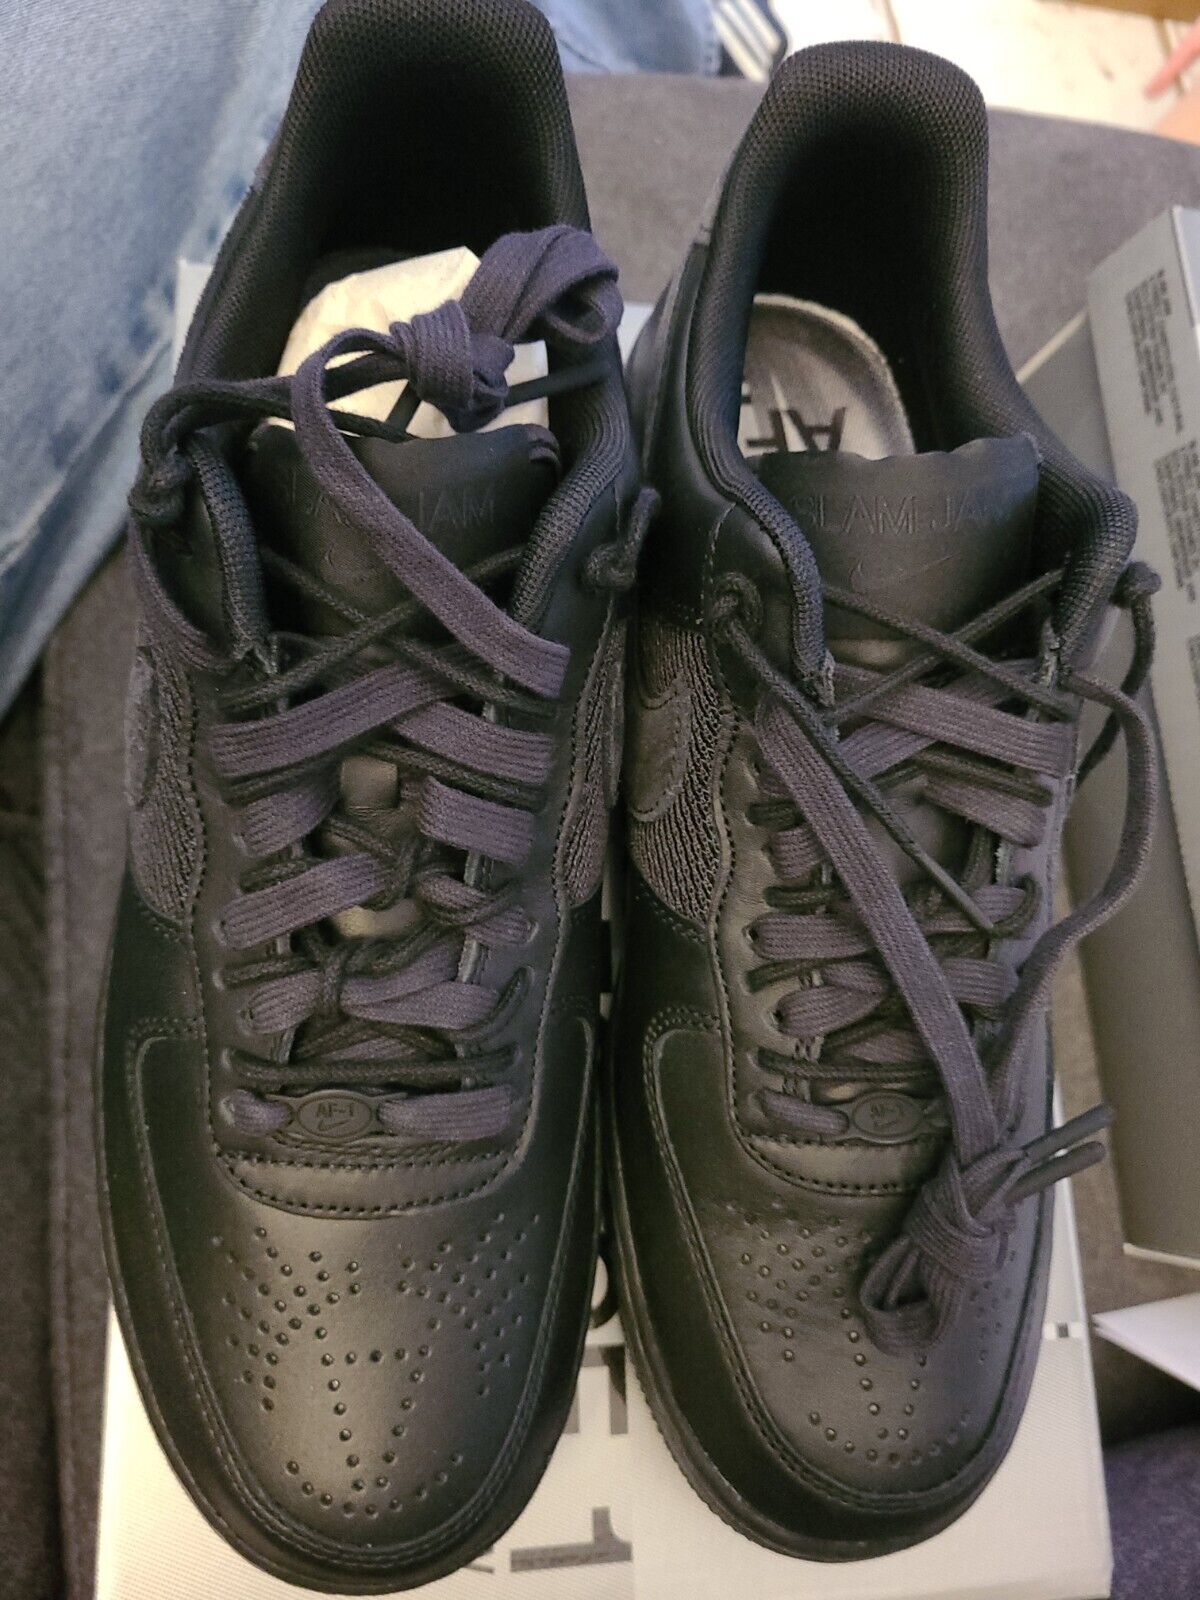 New Nike Air Force 1 X Slam Jam Shoes 'Black & Off Noir' (DX5590-001)